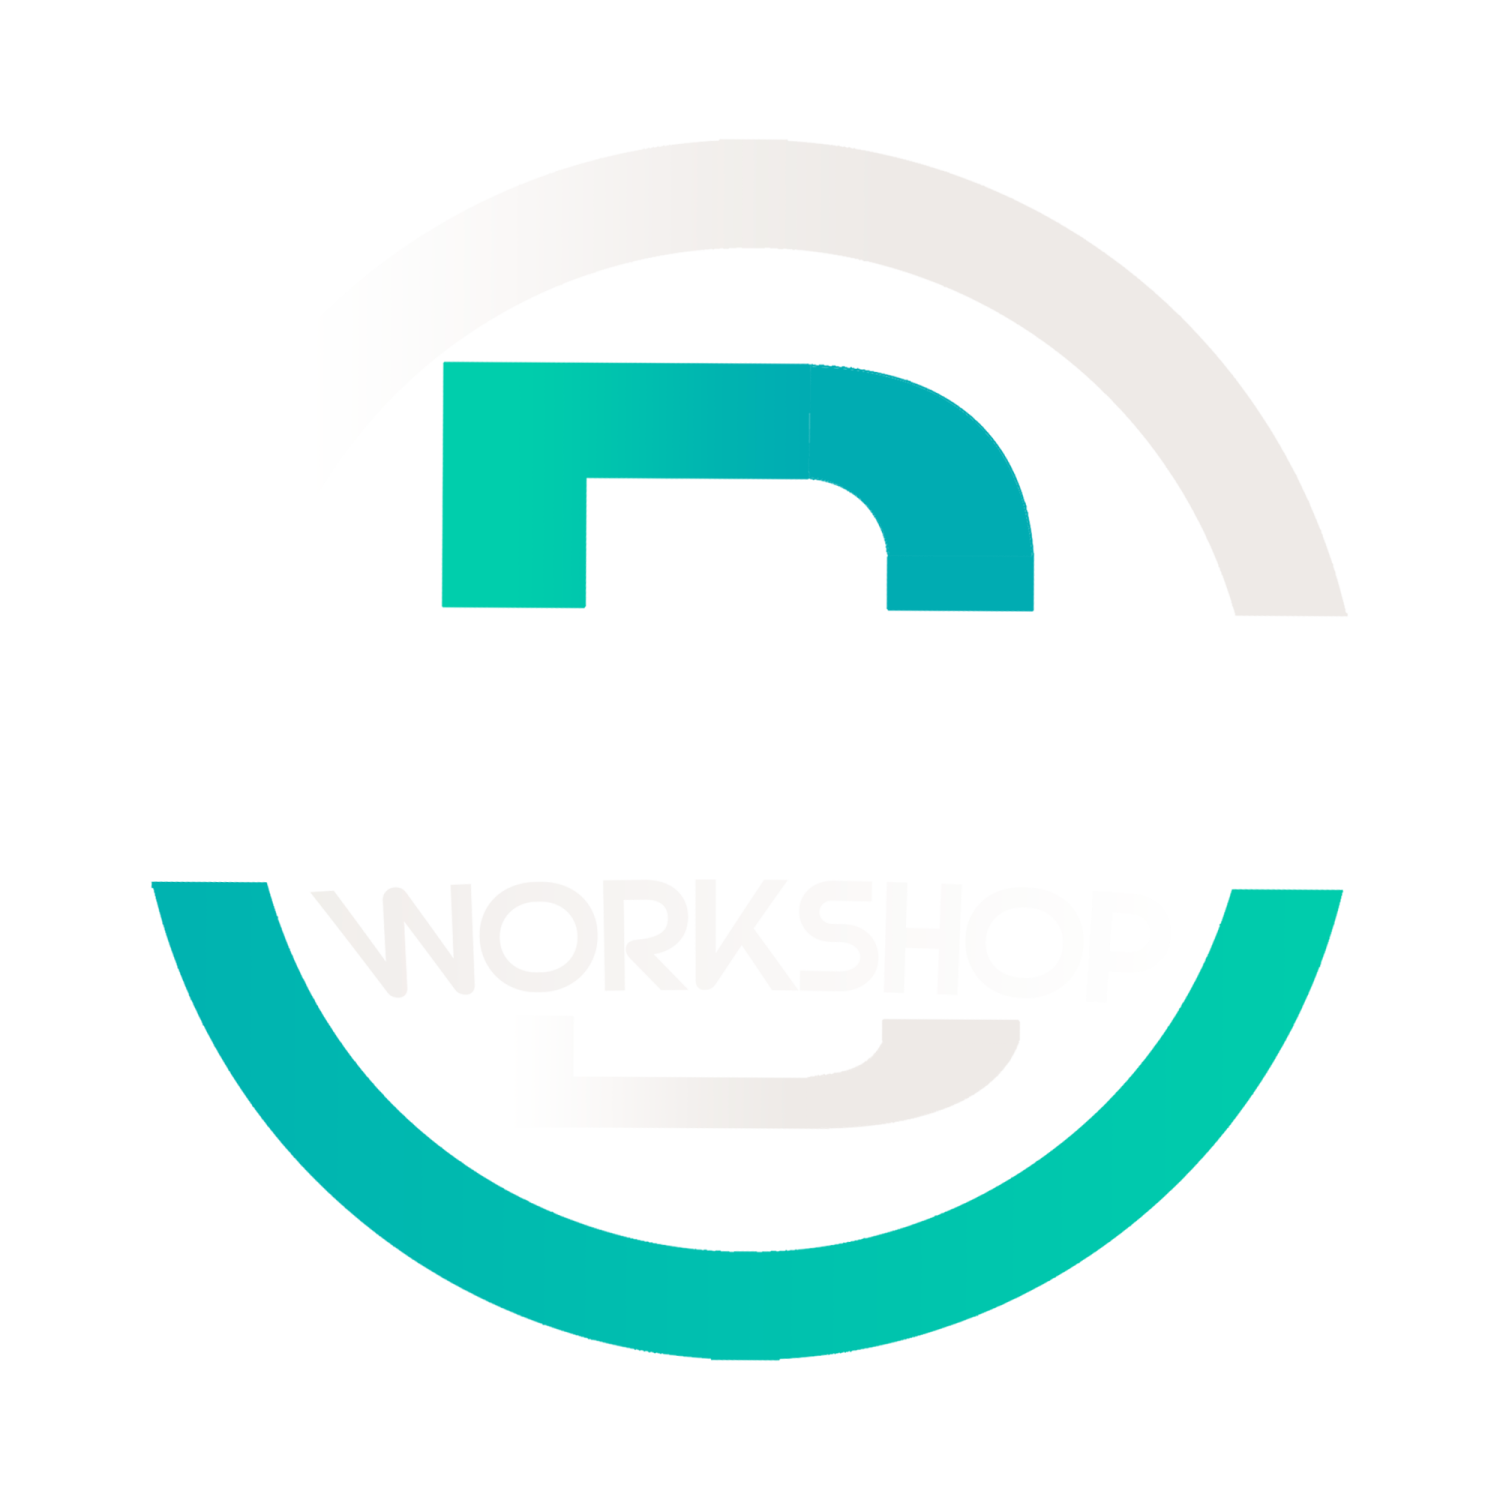 Berkie's Workshop